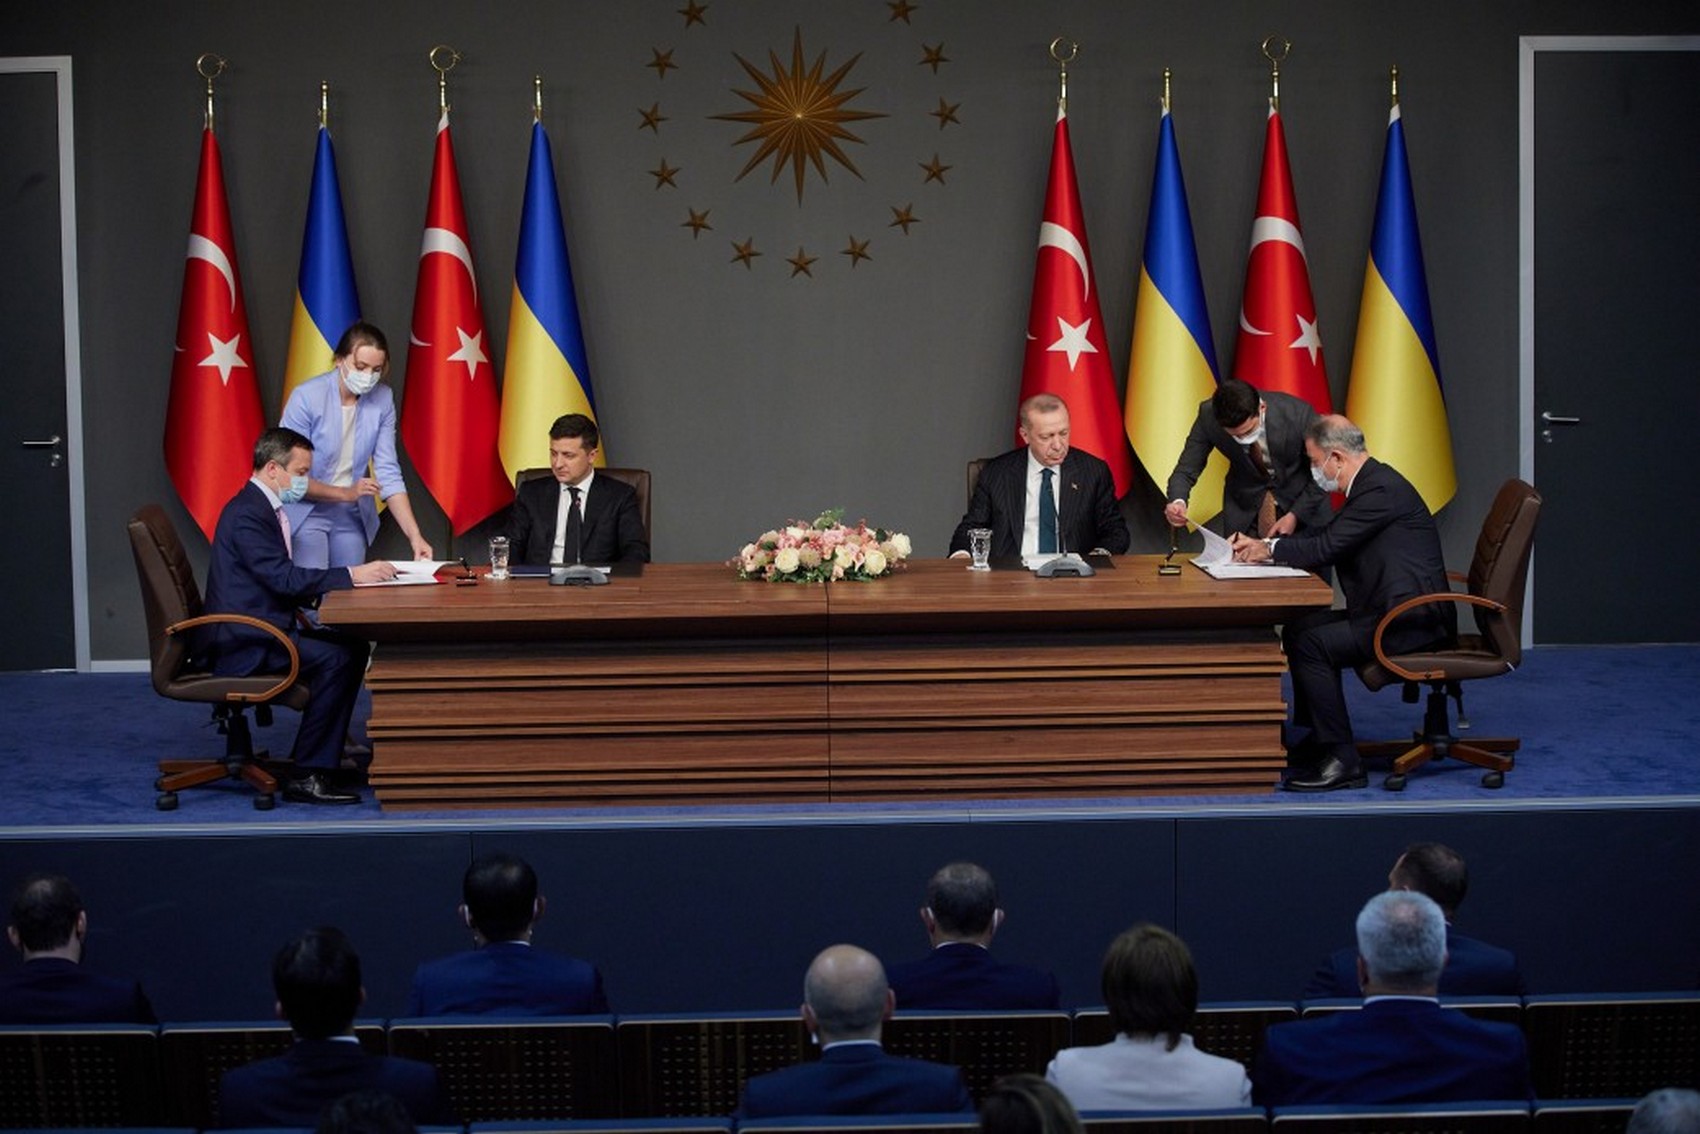 МВД Украины получит материально-техническую помощь от Турции
